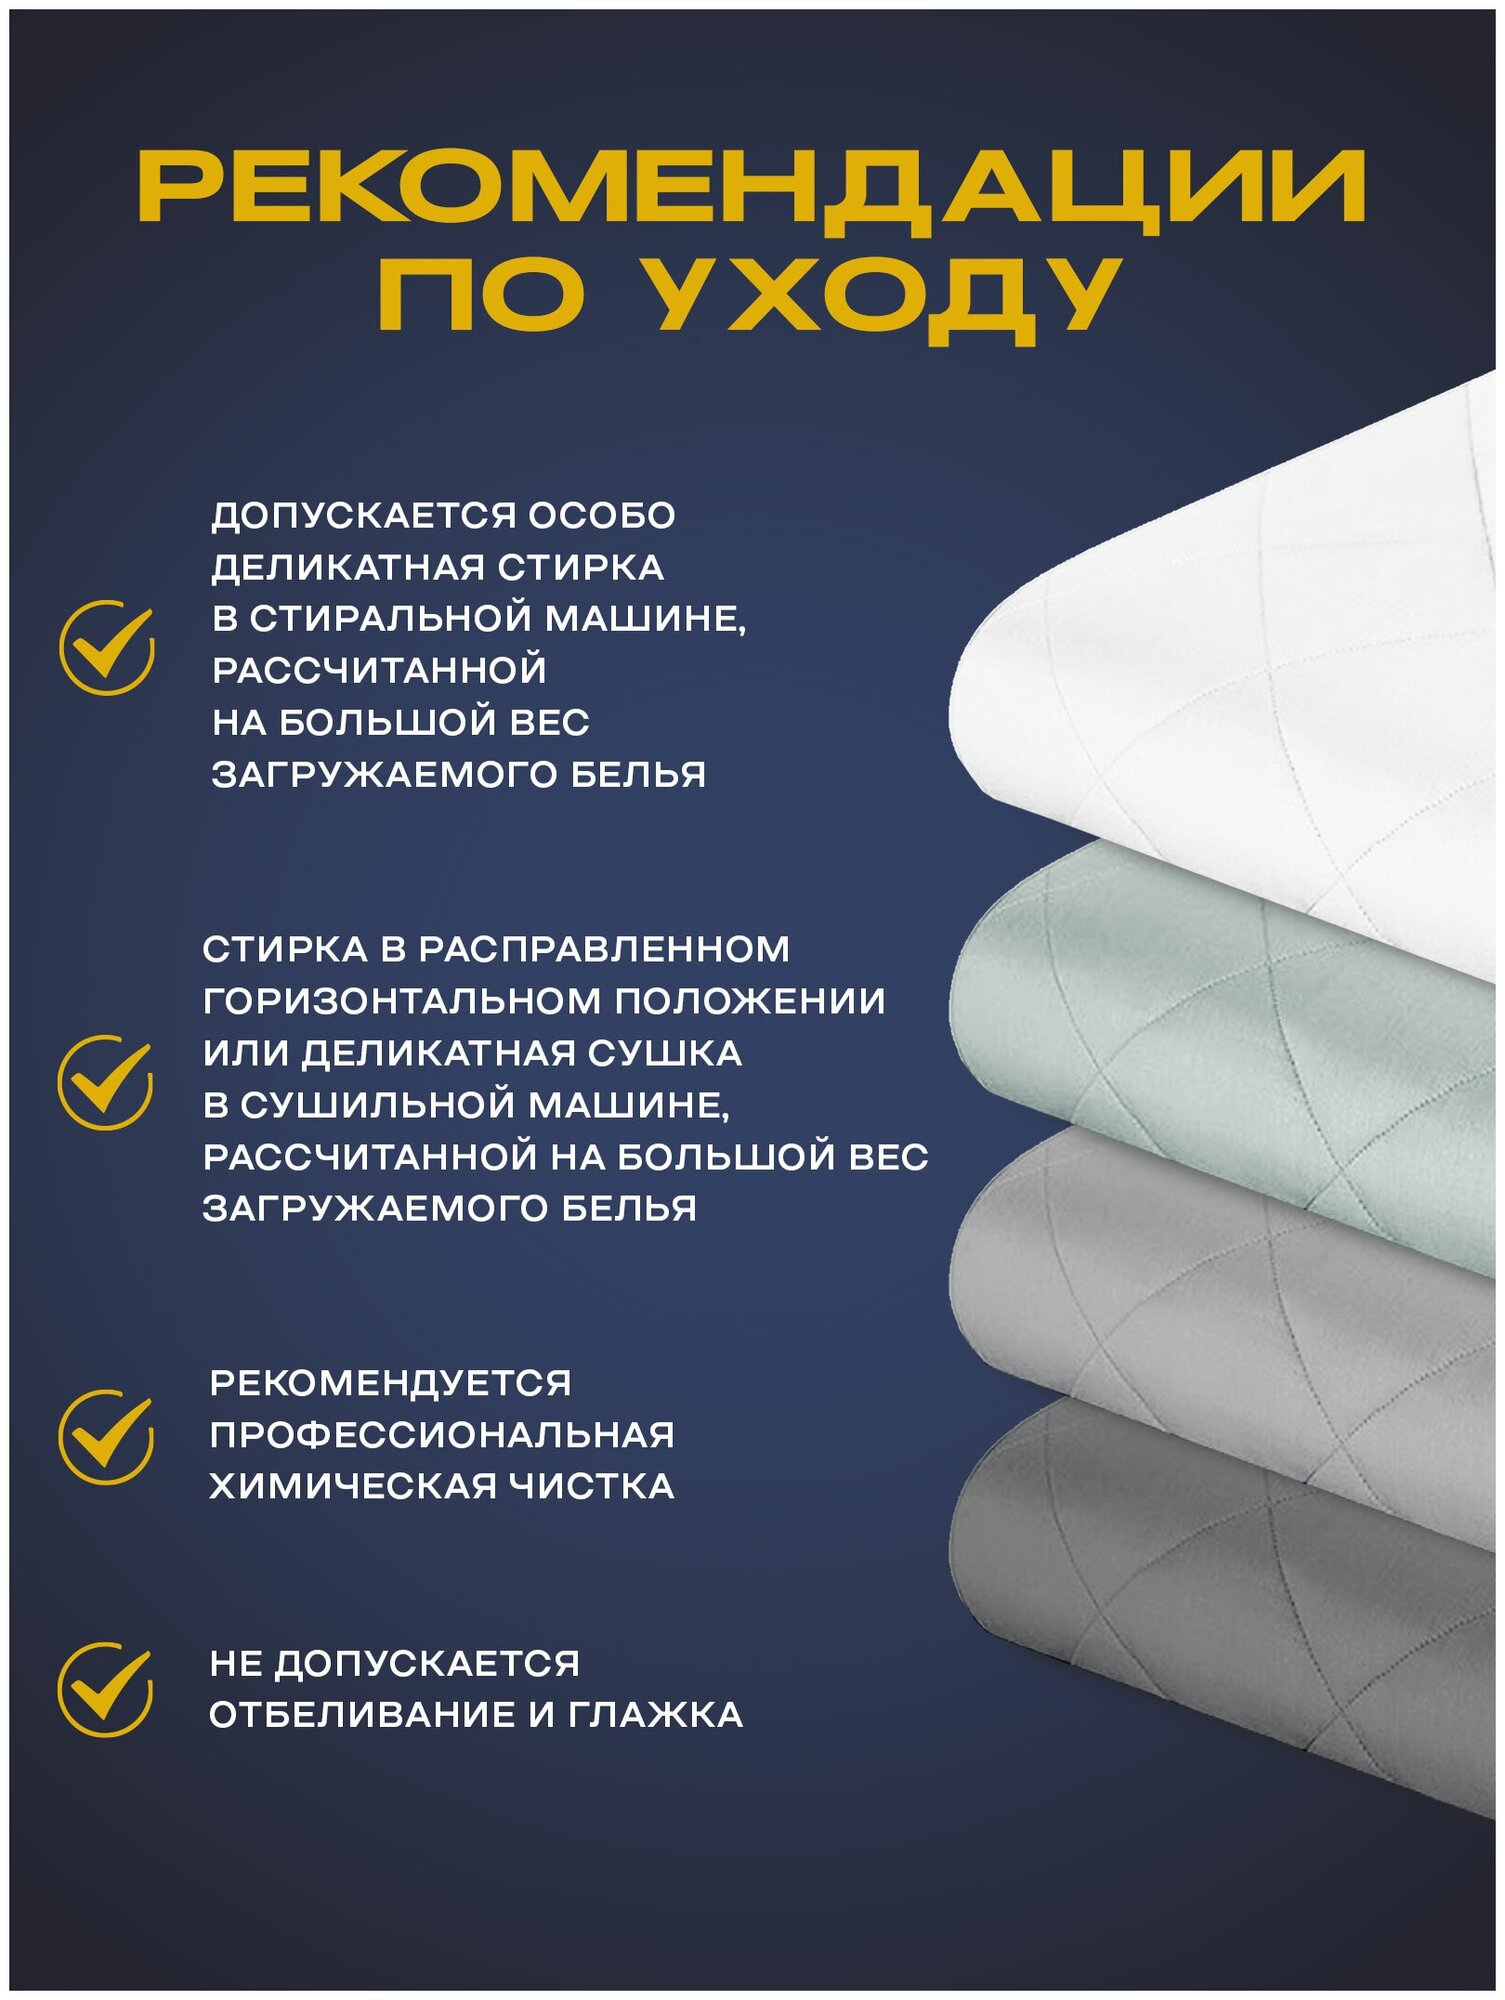 Утяжеленное одеяло Gravity (Гравити) Wellina, 140x205 см. белое 8 кг./ Сенсорное одеяло Gravity 140 x 205 см. / Тяжелое одеяло 8 кг. - фотография № 14